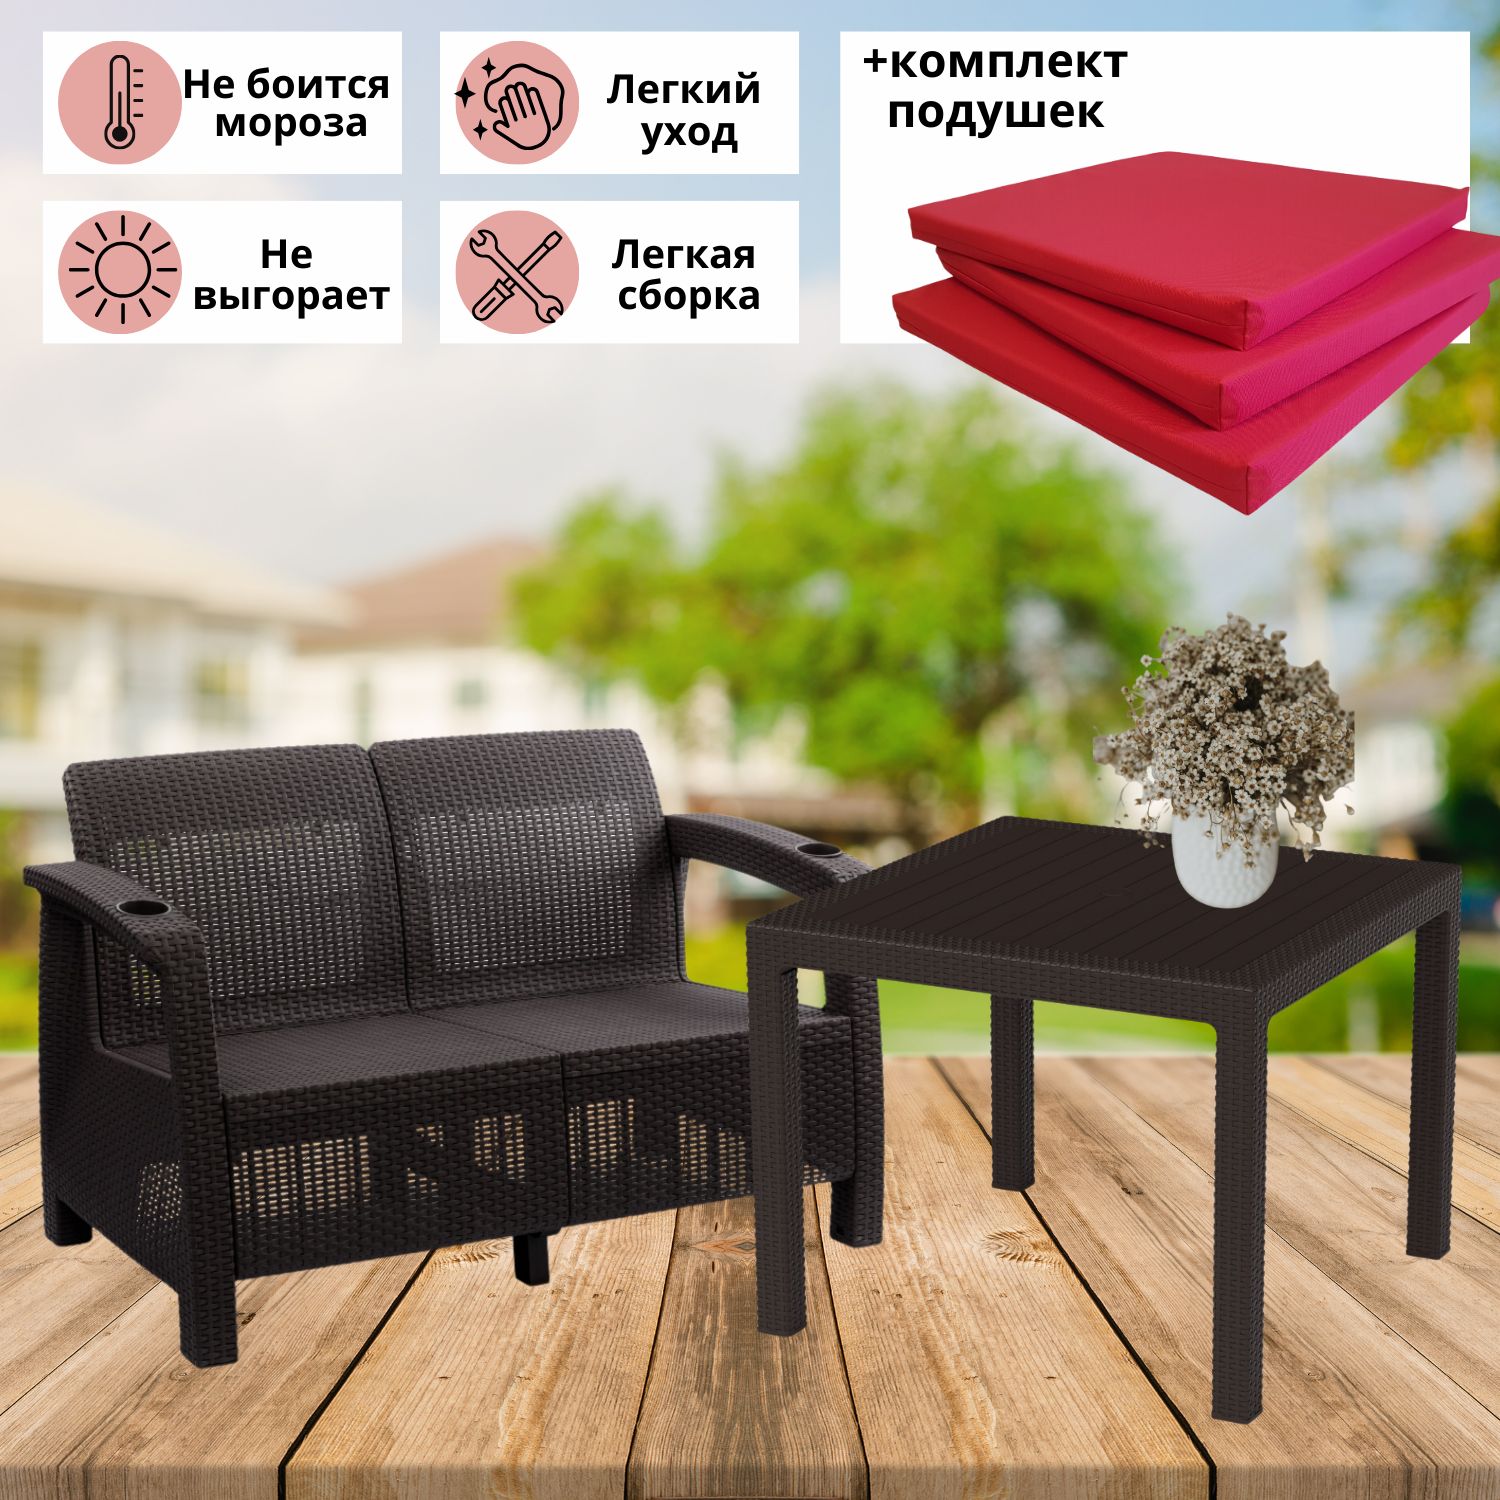 Комплект садовой мебели с подушками Альтернатива Фазенда-2 RT0456 диван и обеденный стол